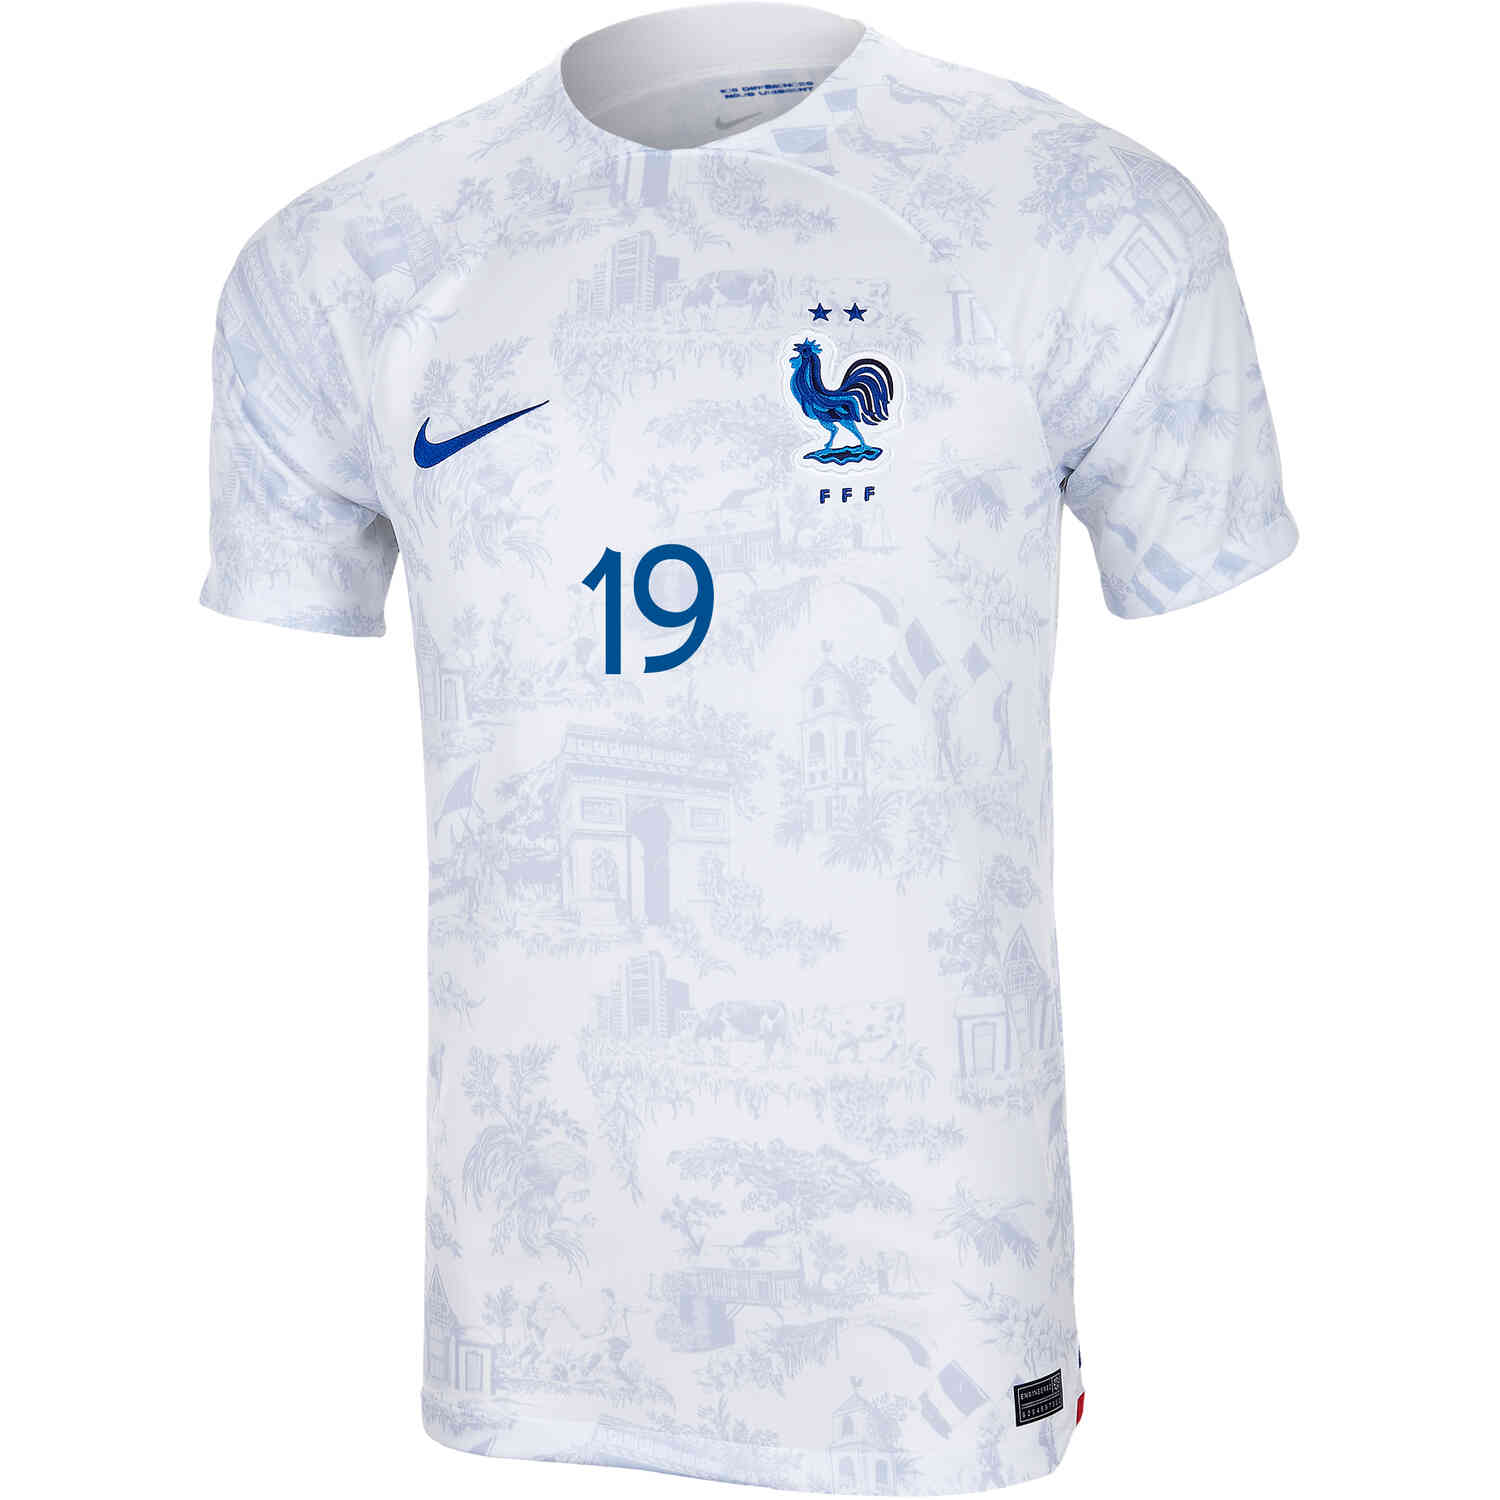 krijgen met de klok mee zeewier 2022 Nike Karim Benzema France Away Jersey - SoccerPro